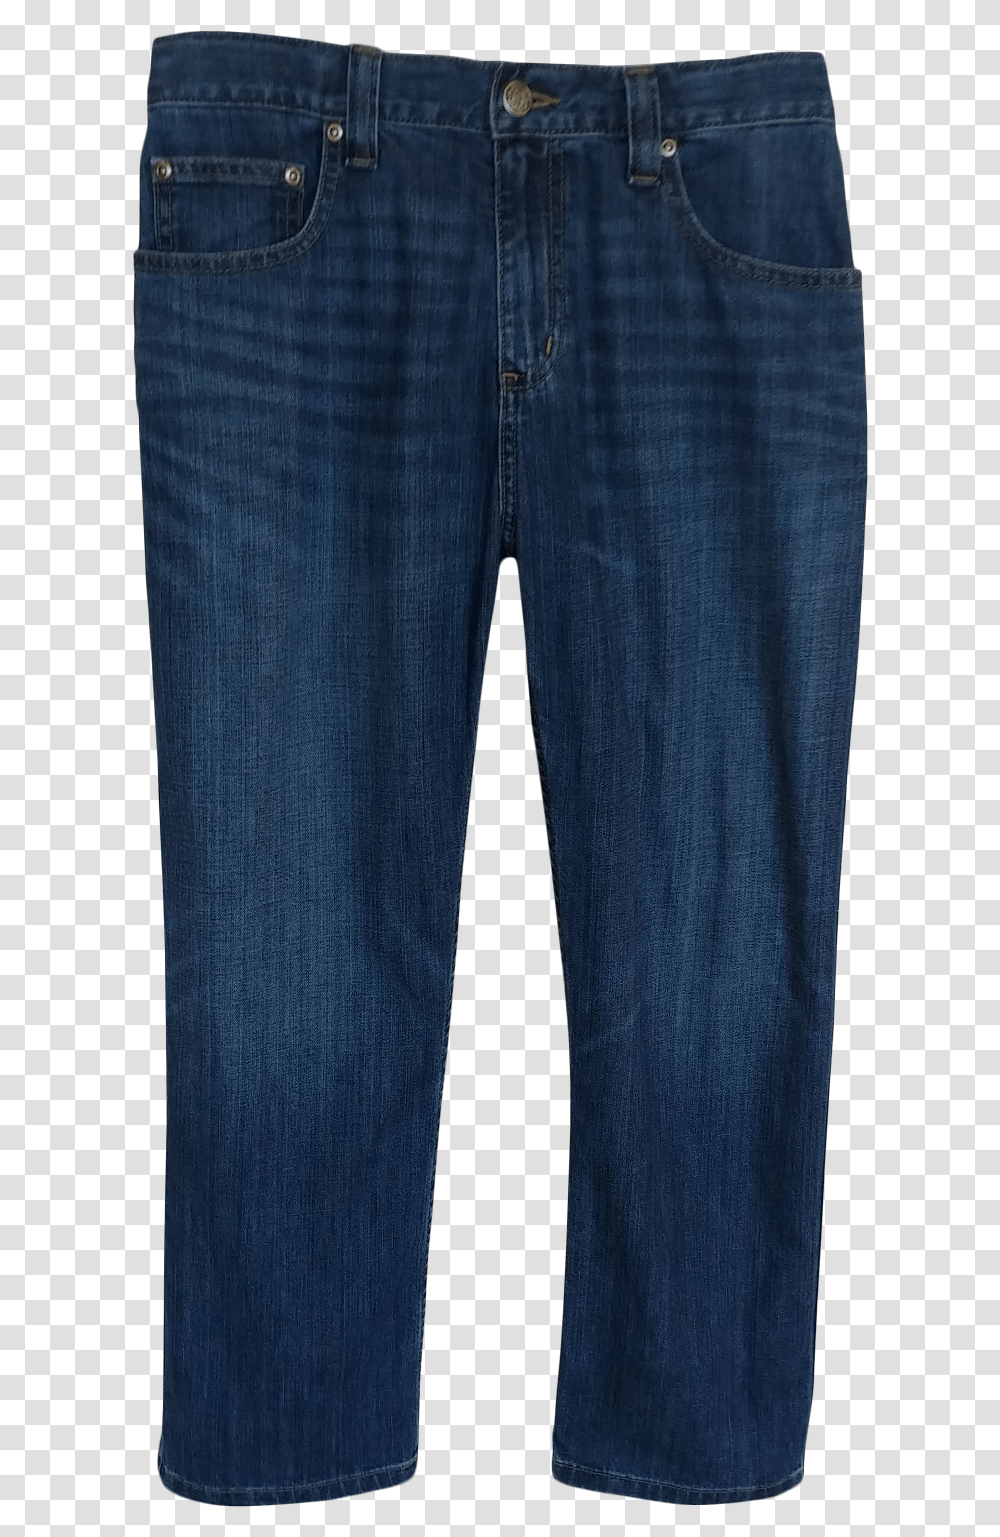 Jeans, Pants, Apparel, Denim Transparent Png